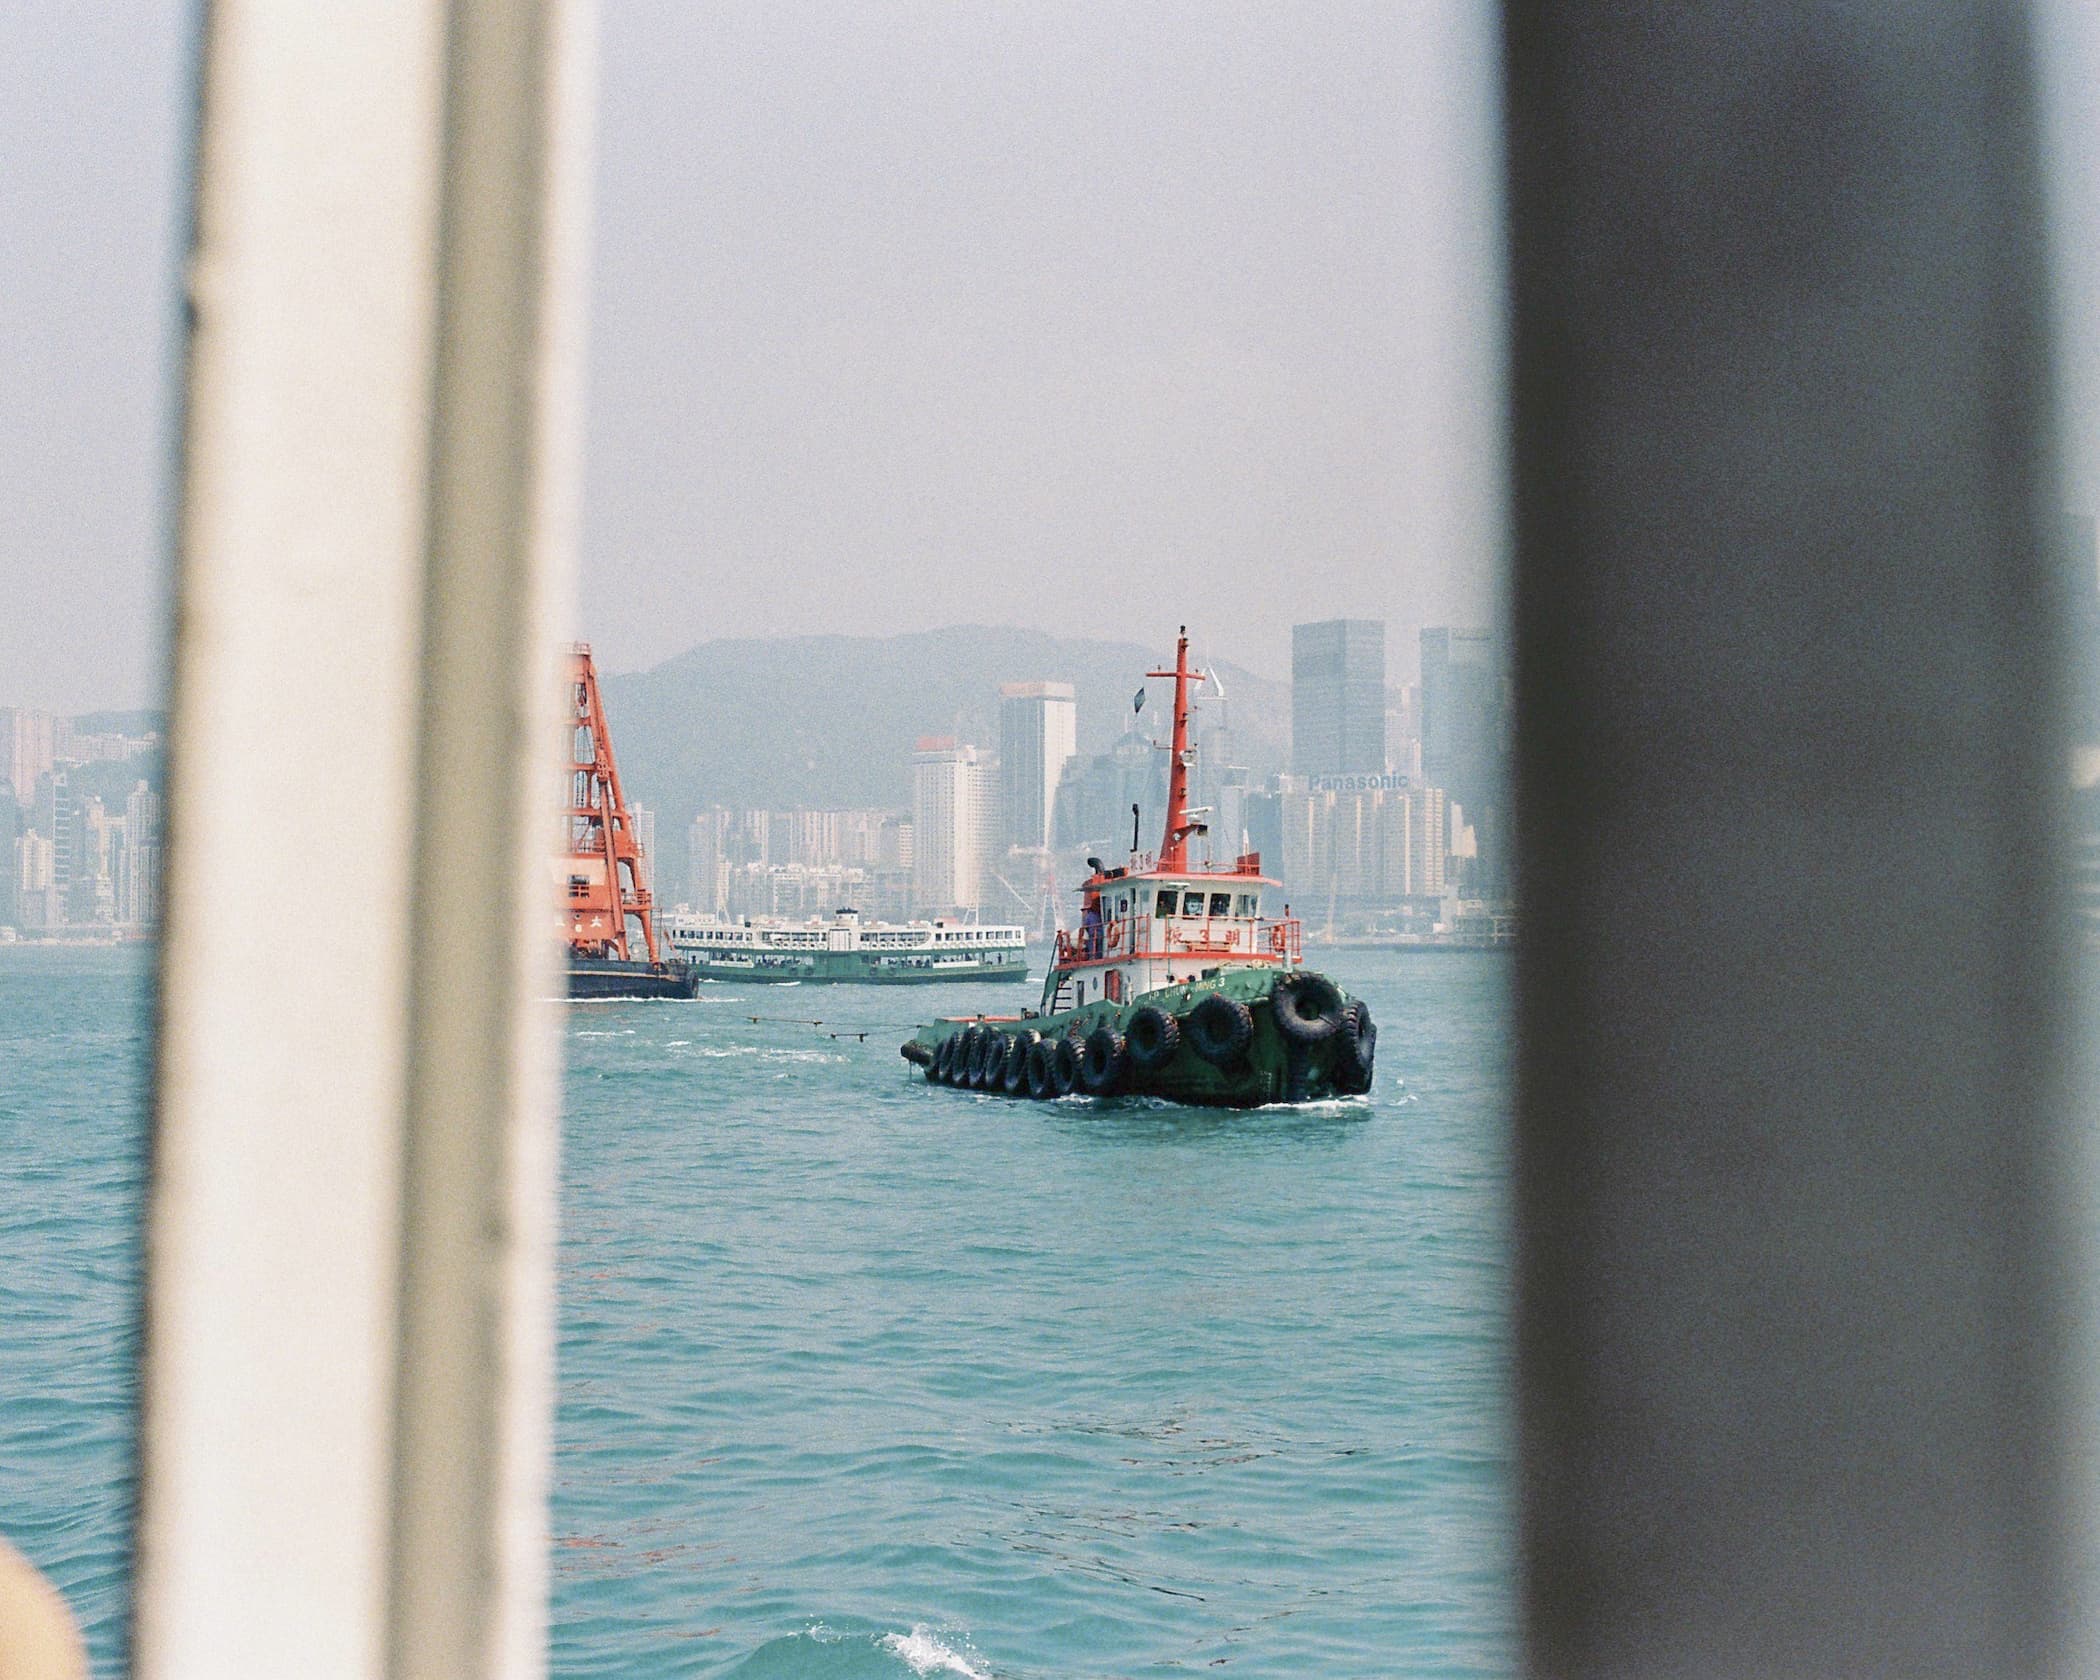 Hong Kong. Star Ferry. Boat 1.